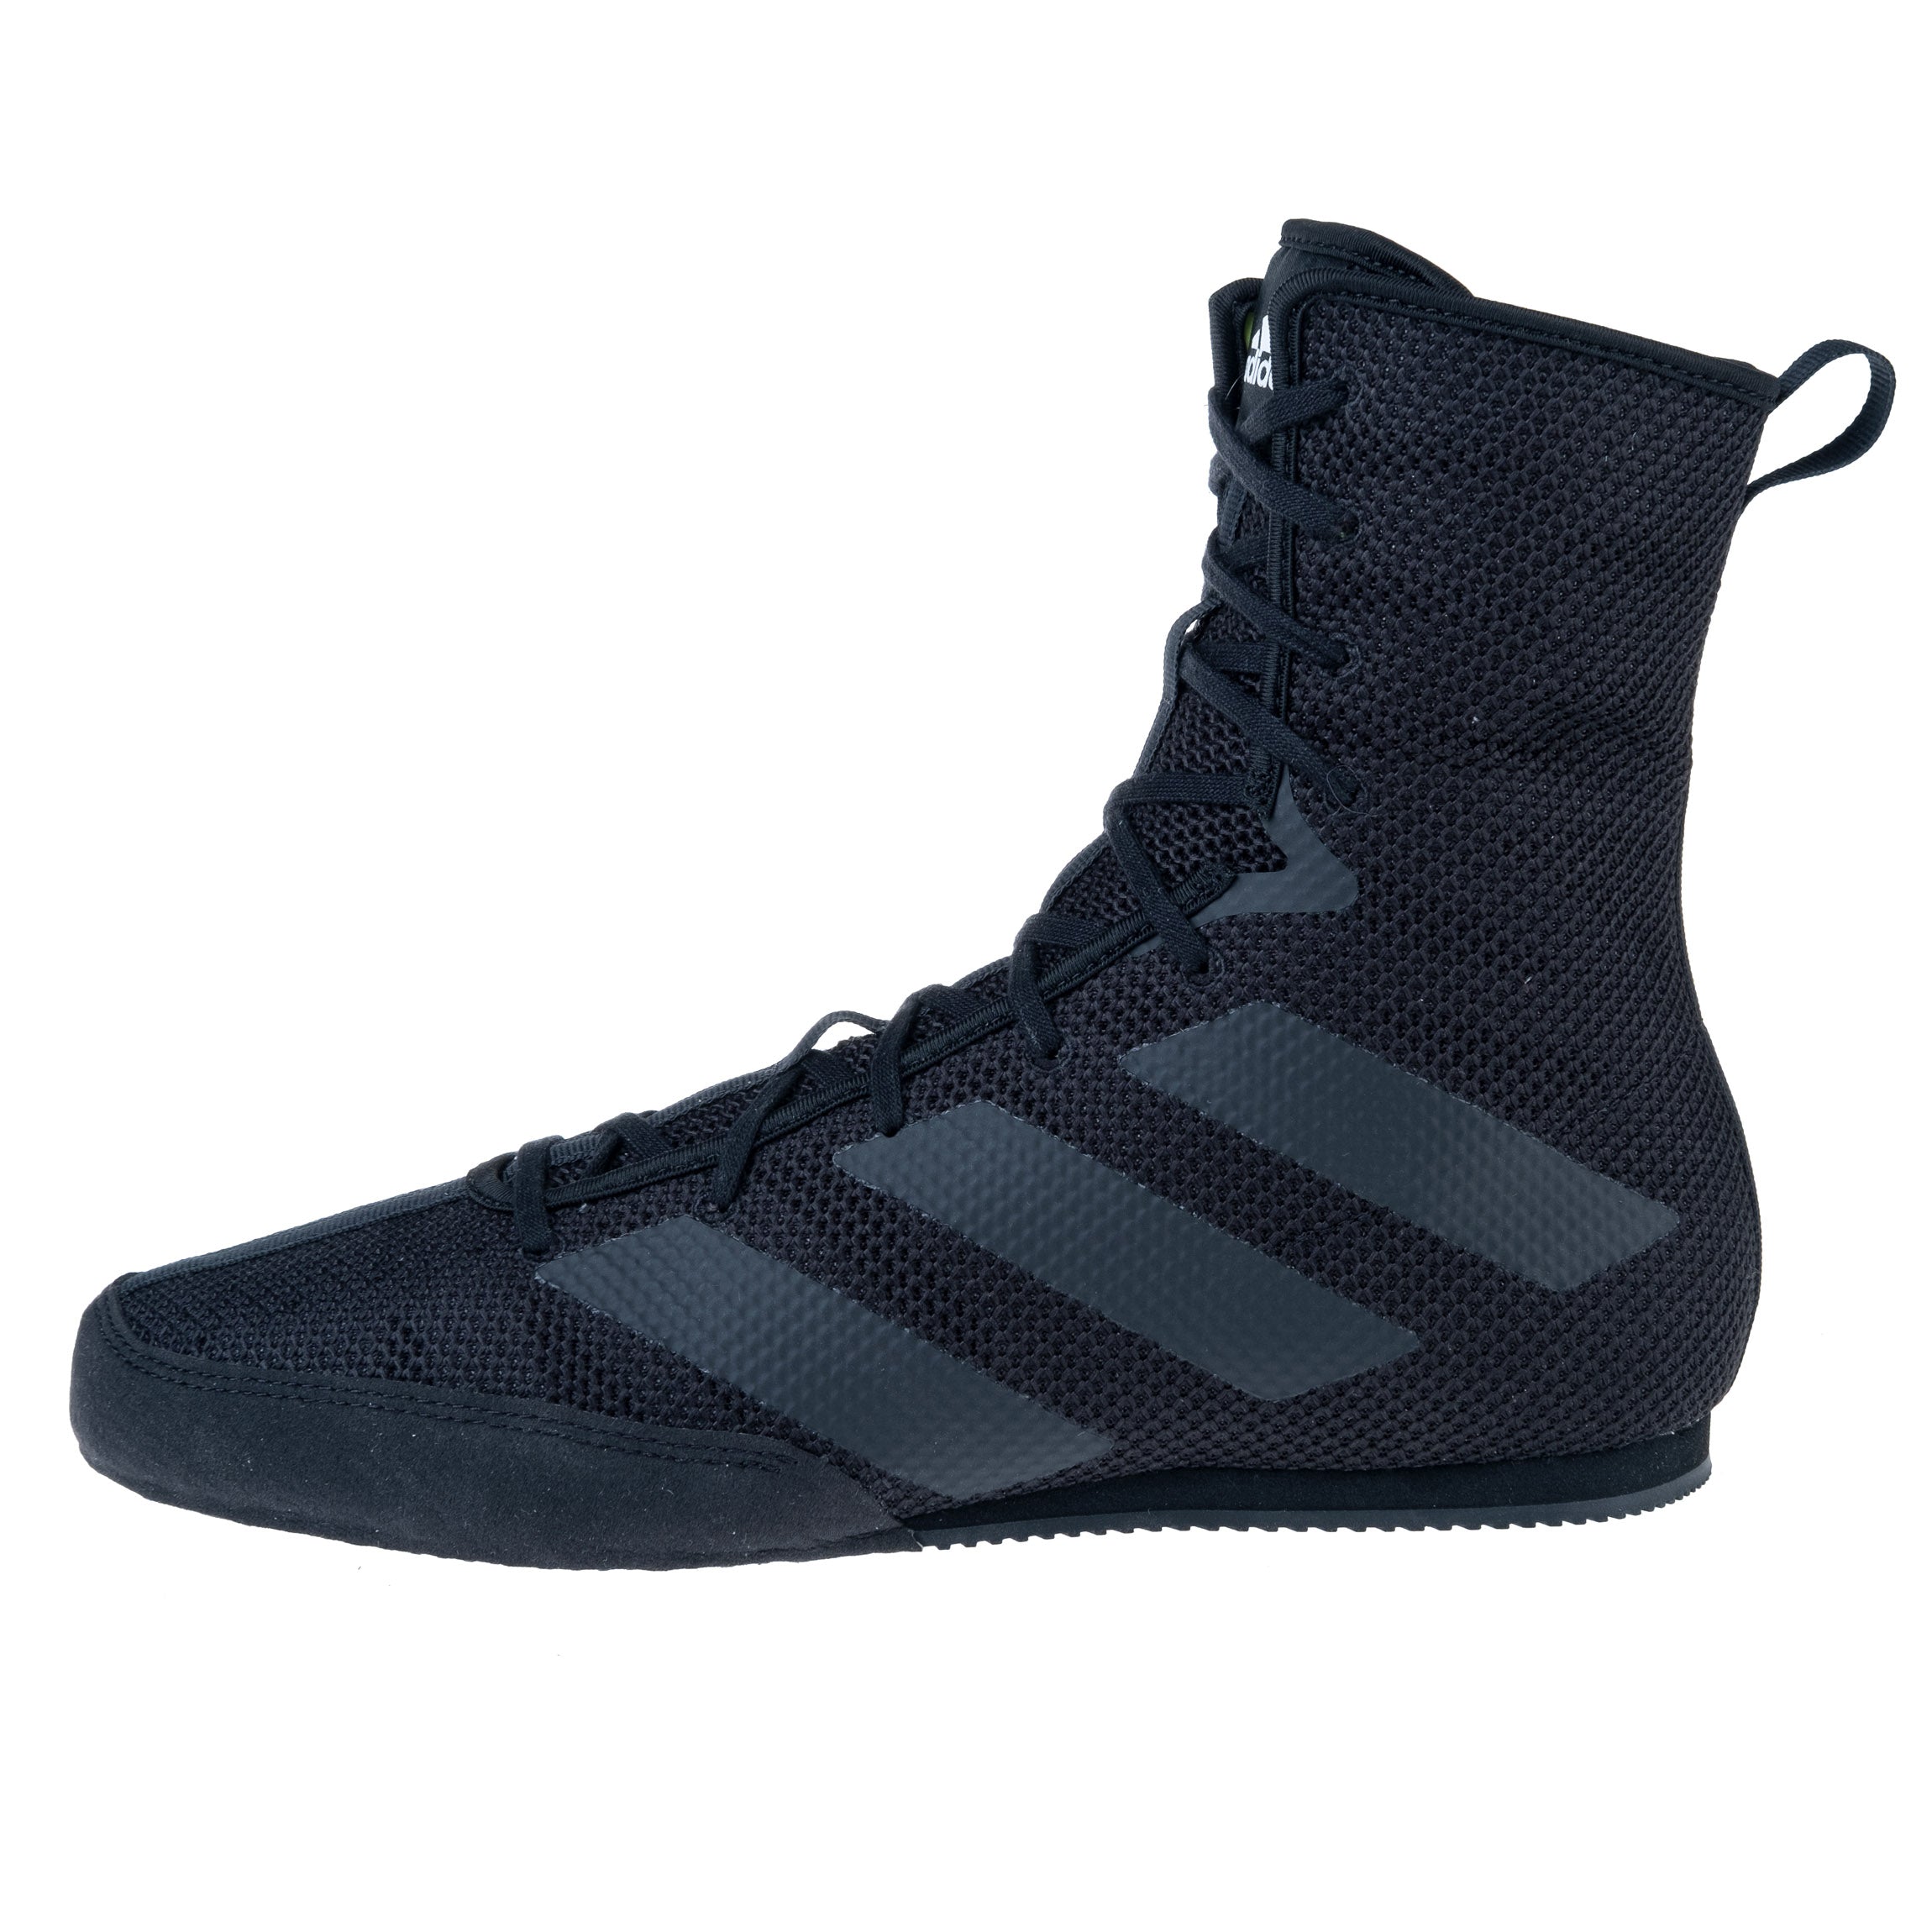 Boxing Shoes adidas Box Hog 3 - black, F99921